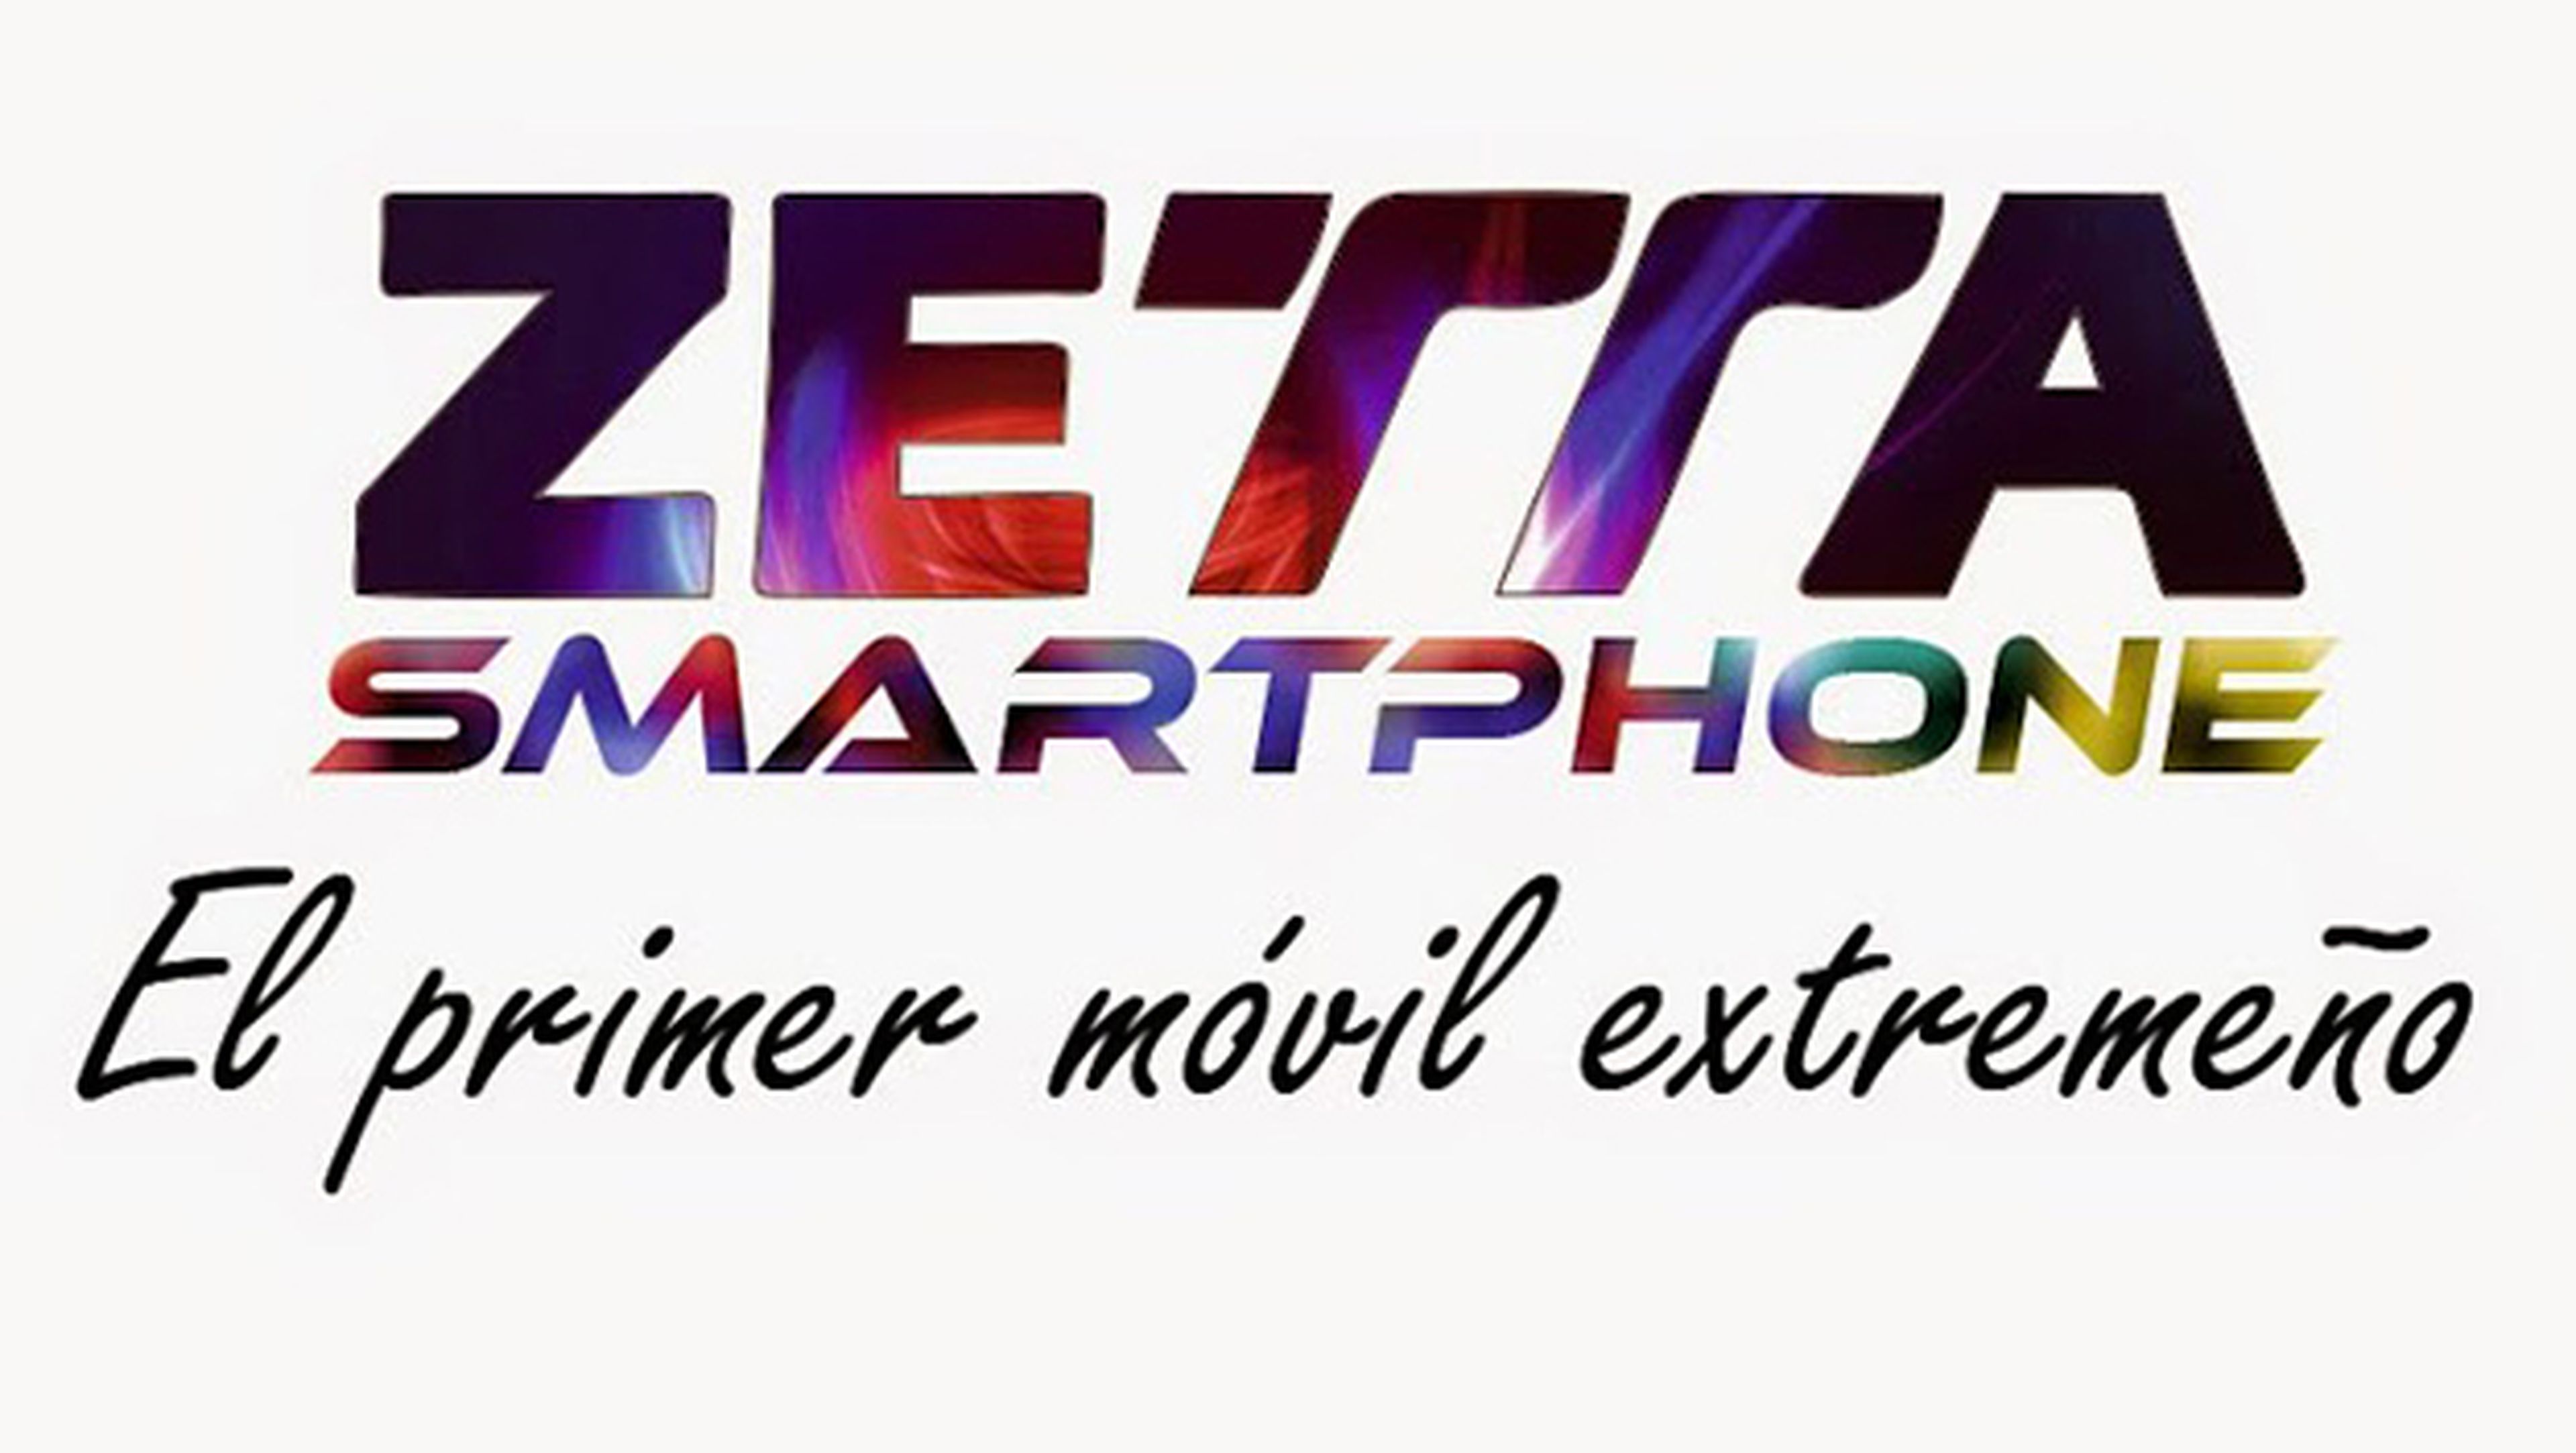 Zetta, el teléfono extremeño